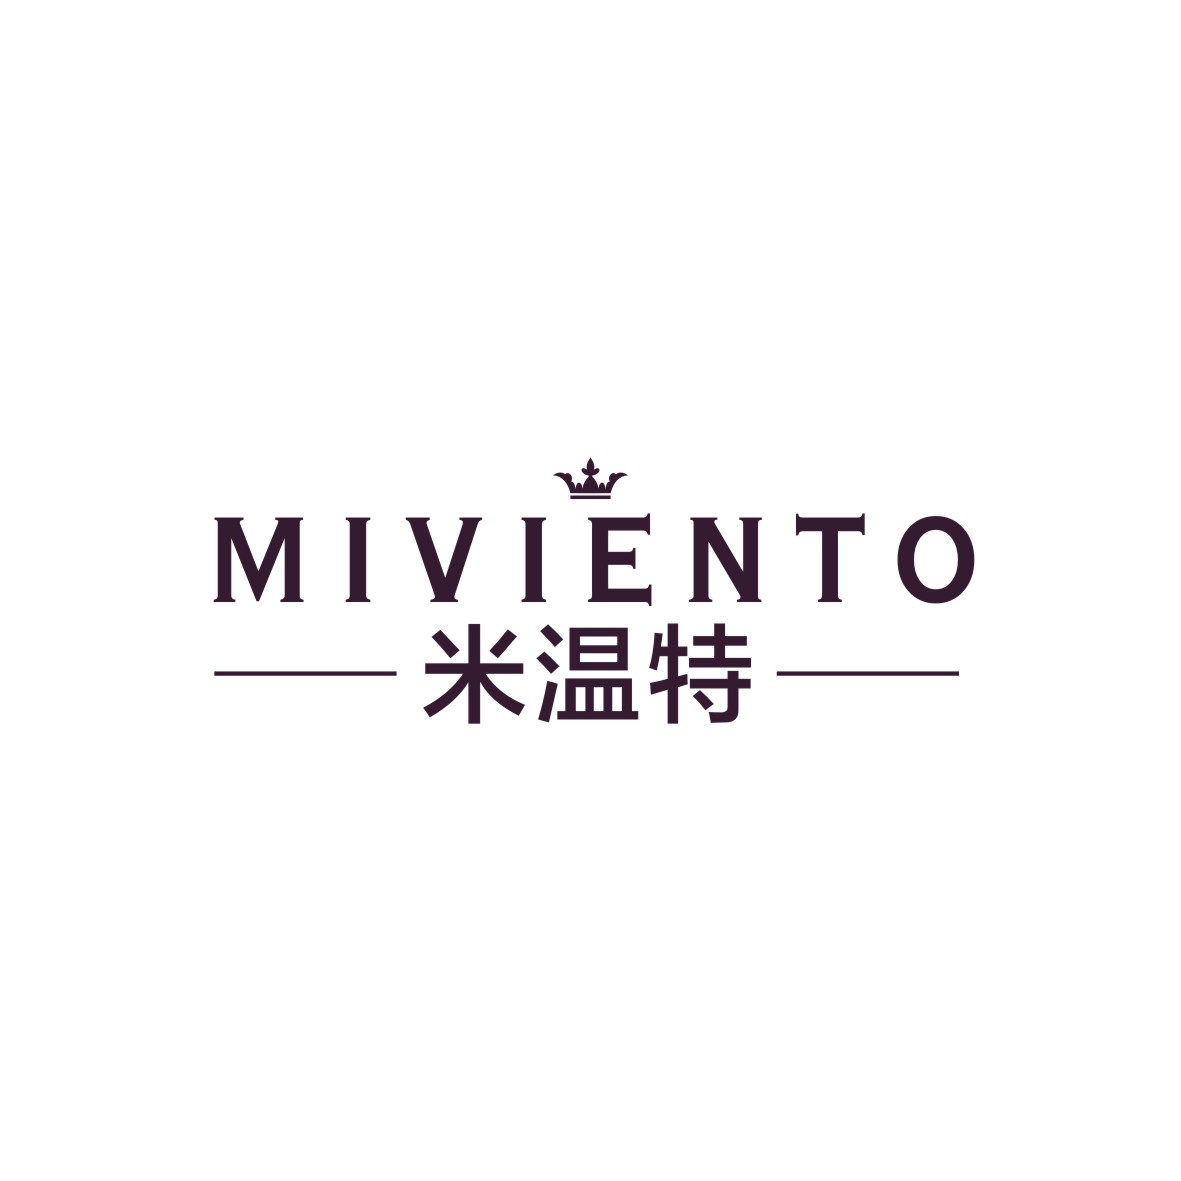 广州知麦网络科技有限公司商标米温特 MIVIENTO（25类）多少钱？